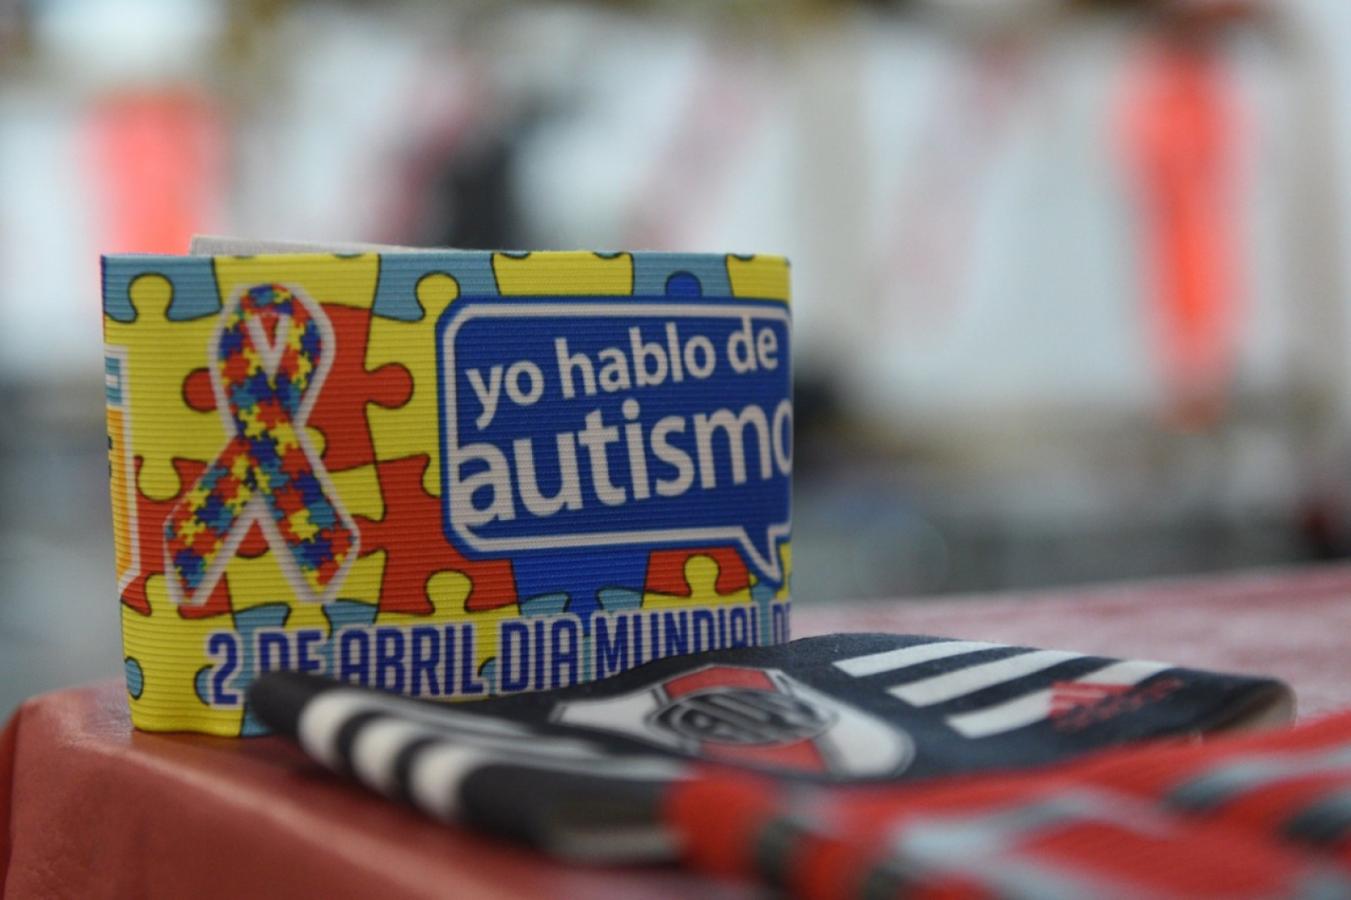 Imagen "Yo hablo de autismo". River